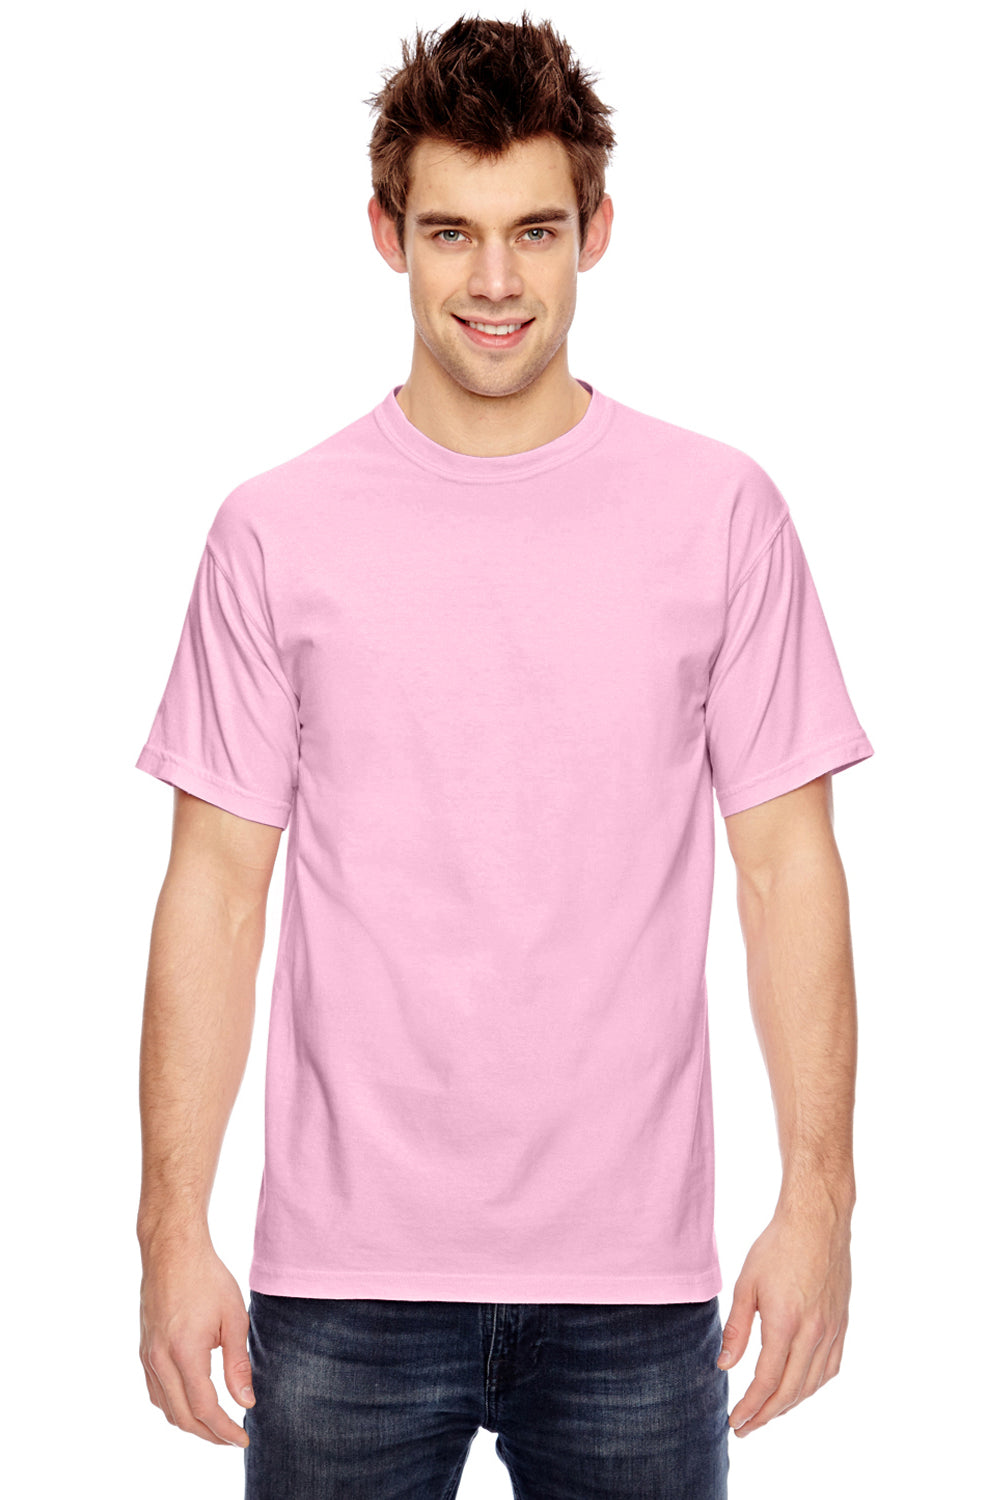 Comfort Colors C1717 Mens Short Sleeve Crewneck T-Shirt Blossom Pink Front